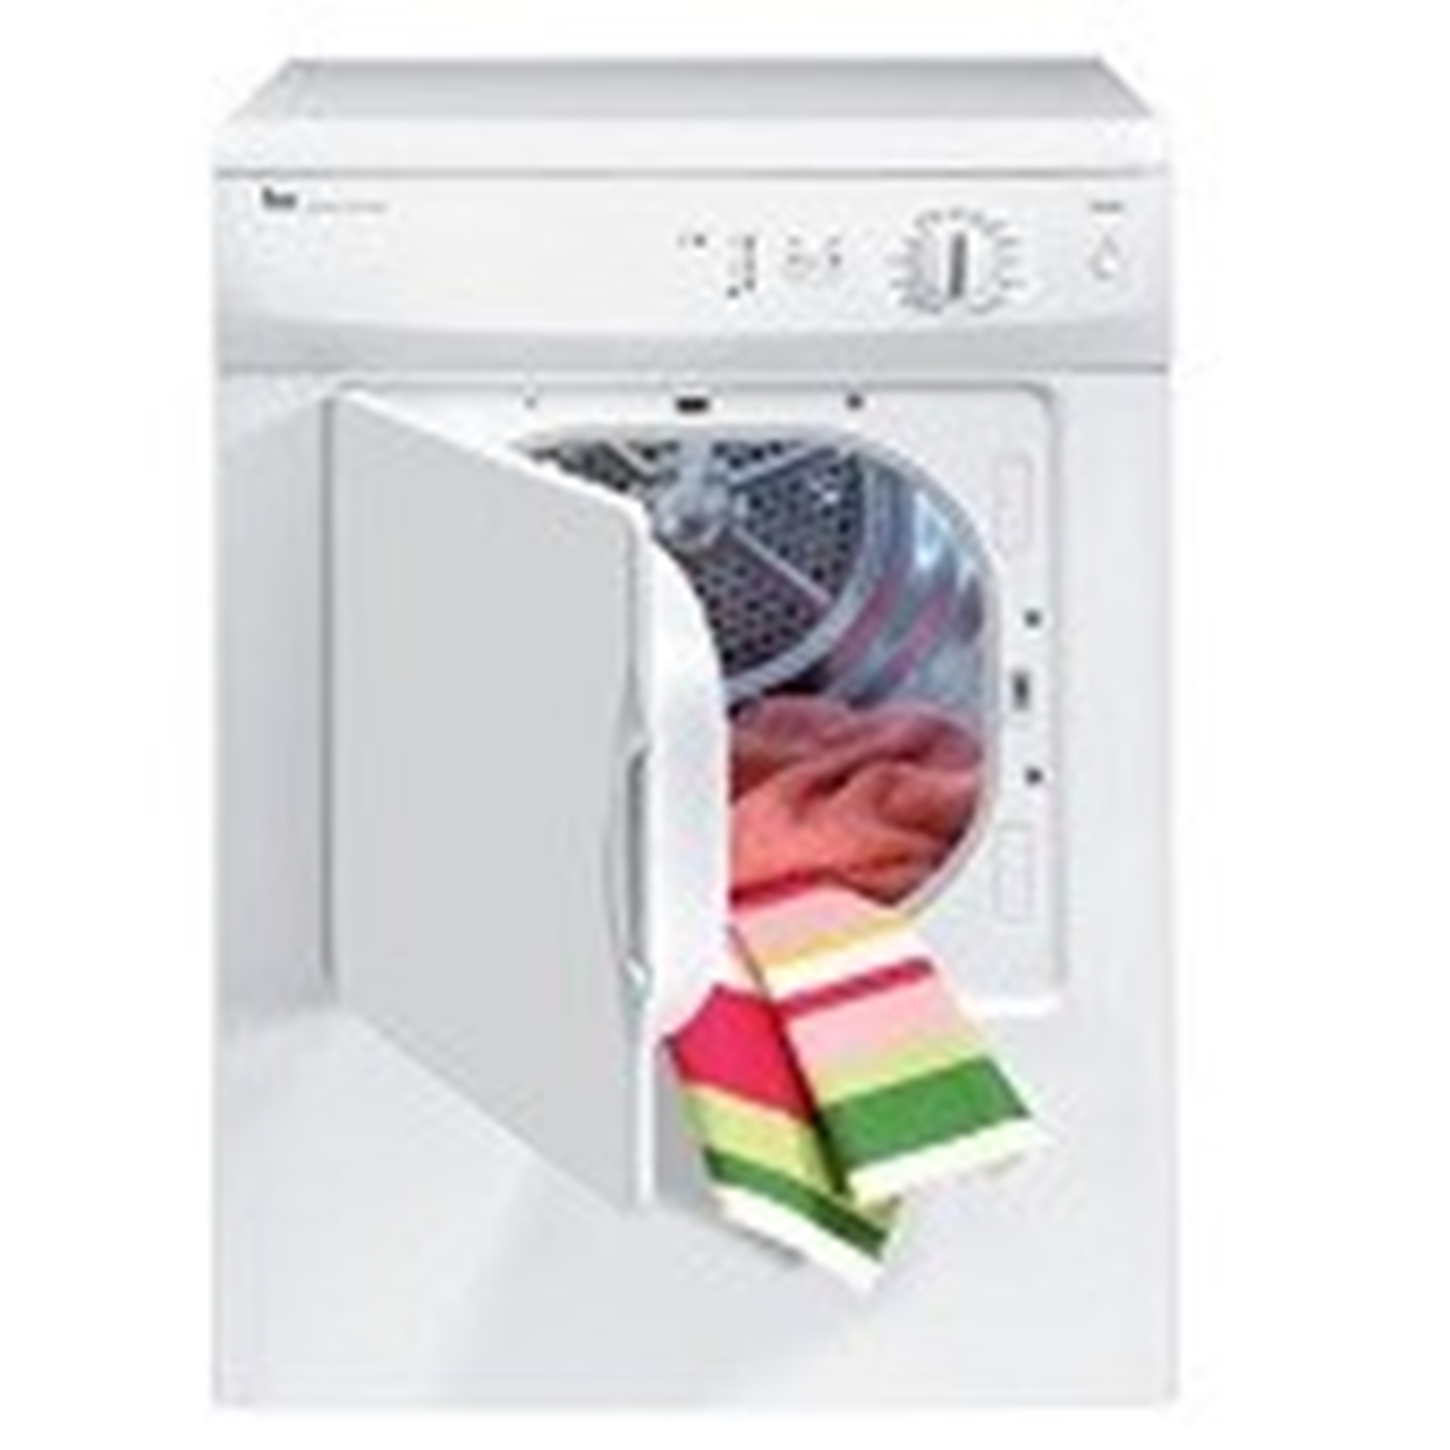 Hình ảnh nhóm sản phẩm Máy giặt Teka